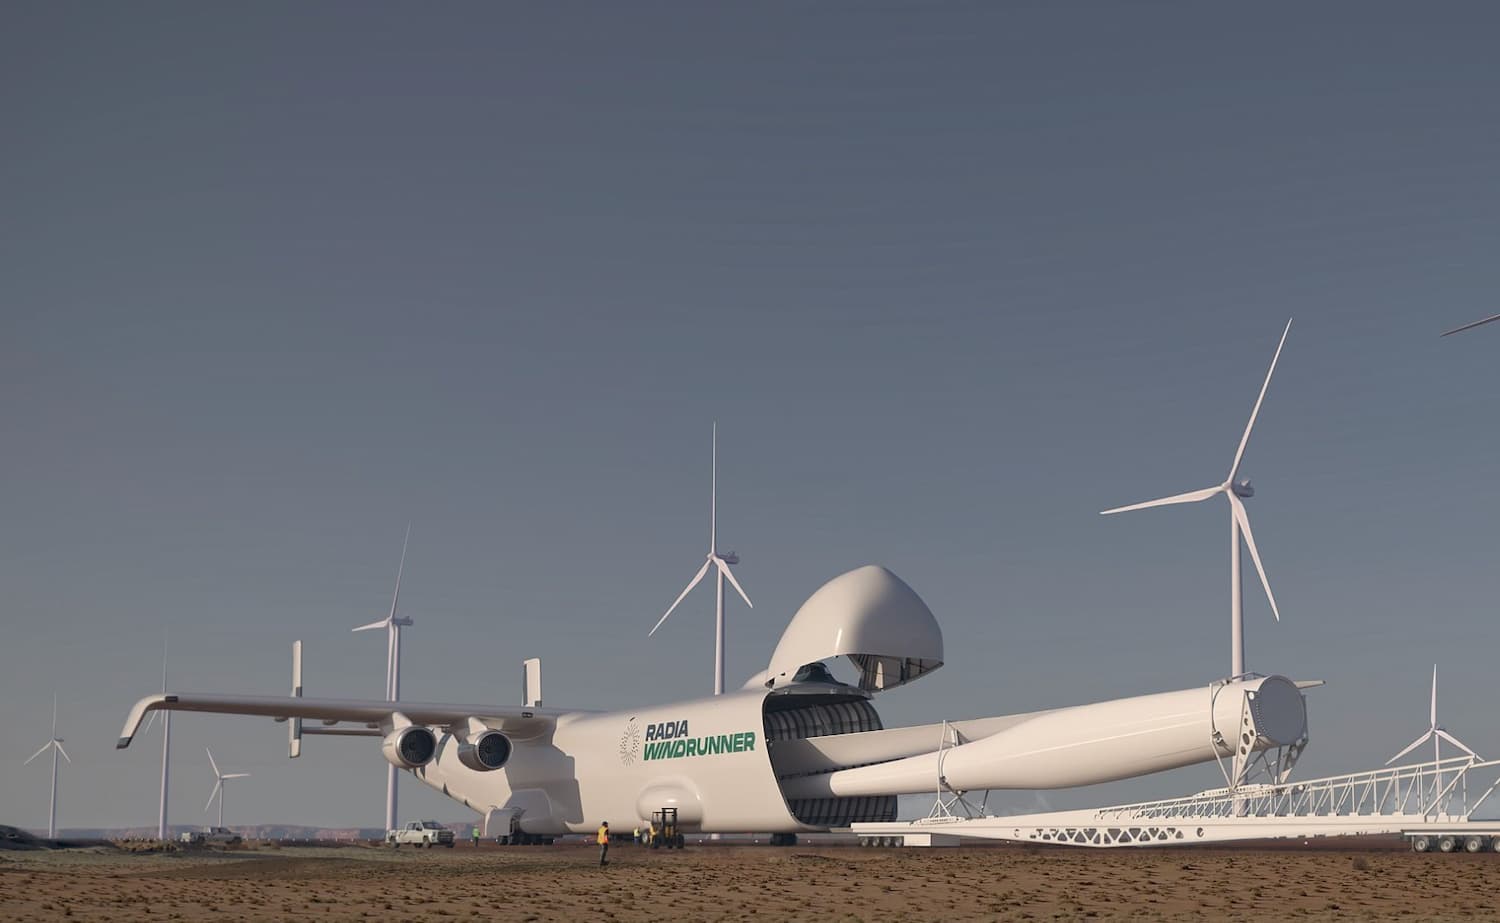 最大风机叶片运输机」 设计亮相可望推升风电产业规模| 新闻| Reccessary